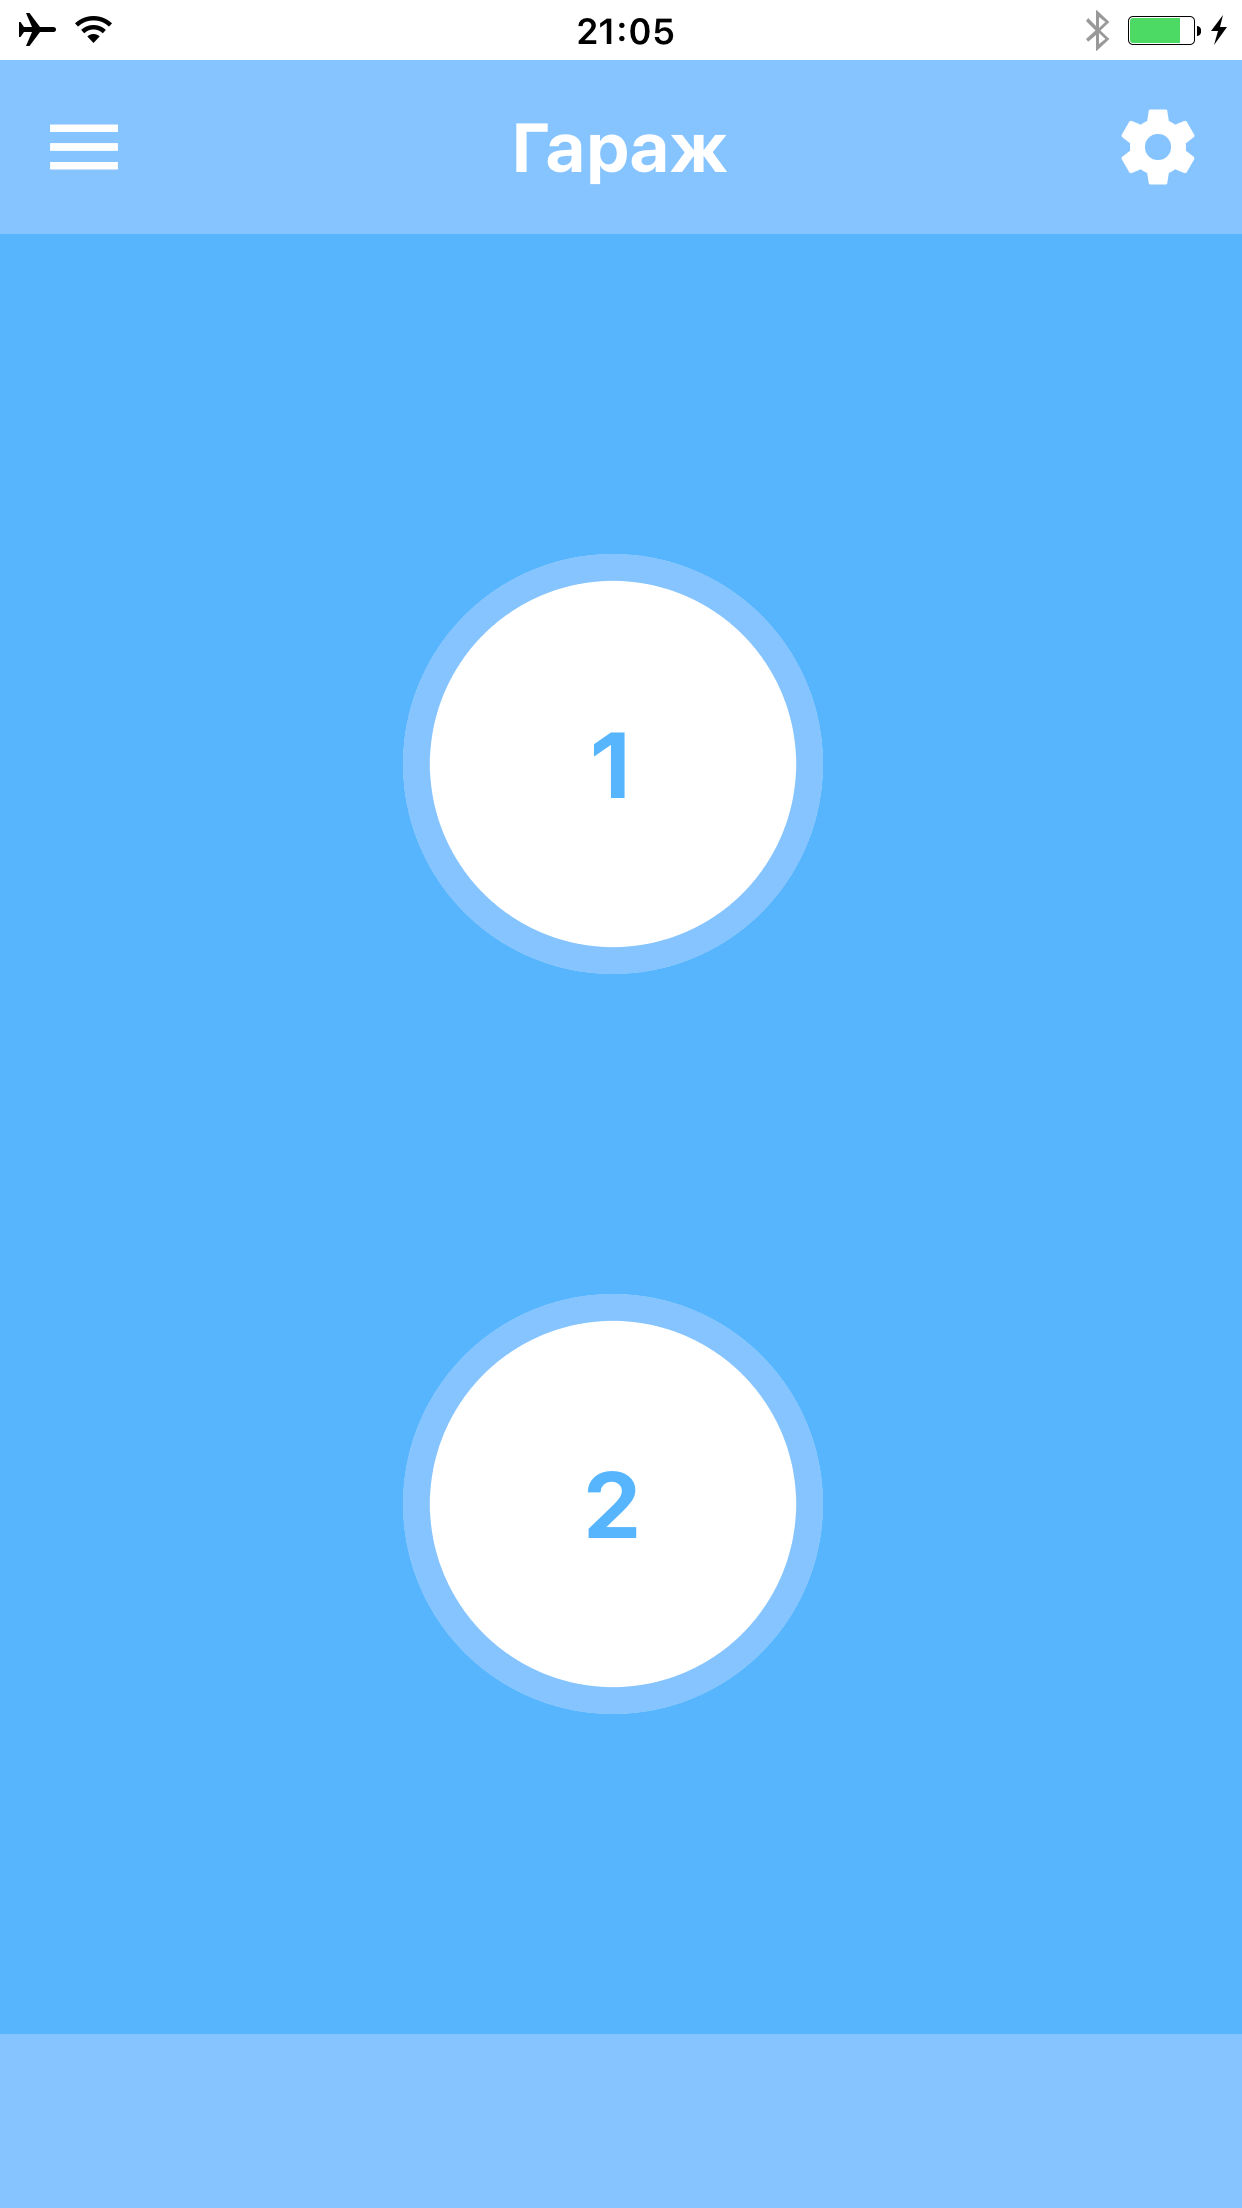 Две кнопки. Один для первого реле и один для второго реле (iOS приложение / app)